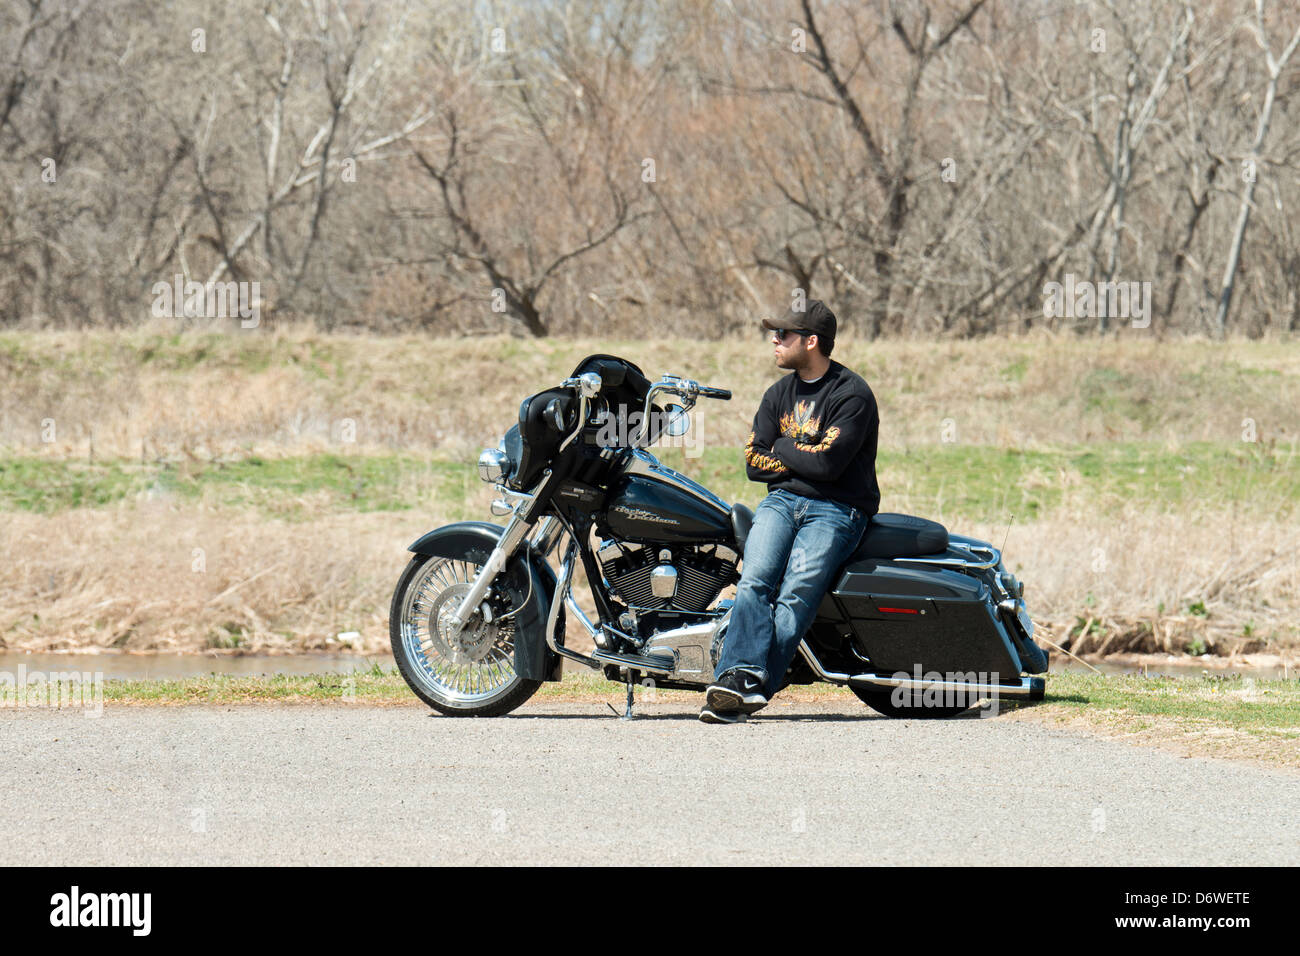 Ein Mann in den späten 20er oder frühen 30s, seitwärts sitzt auf seinem Harley Davidson Motorrad und genießt den frühen Frühling. Oklahoma, USA. Stockfoto